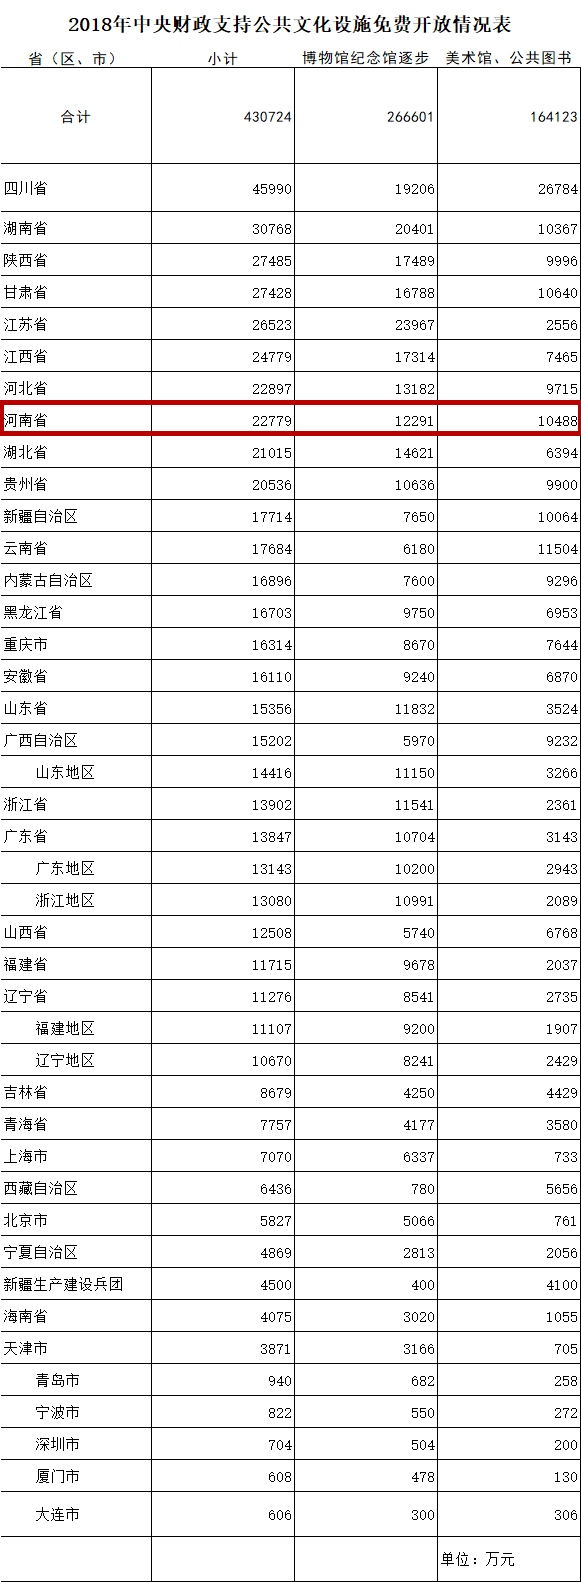 【經濟速遞-文字列表】河南獲中央2.28億補助公共文化設施免費開放